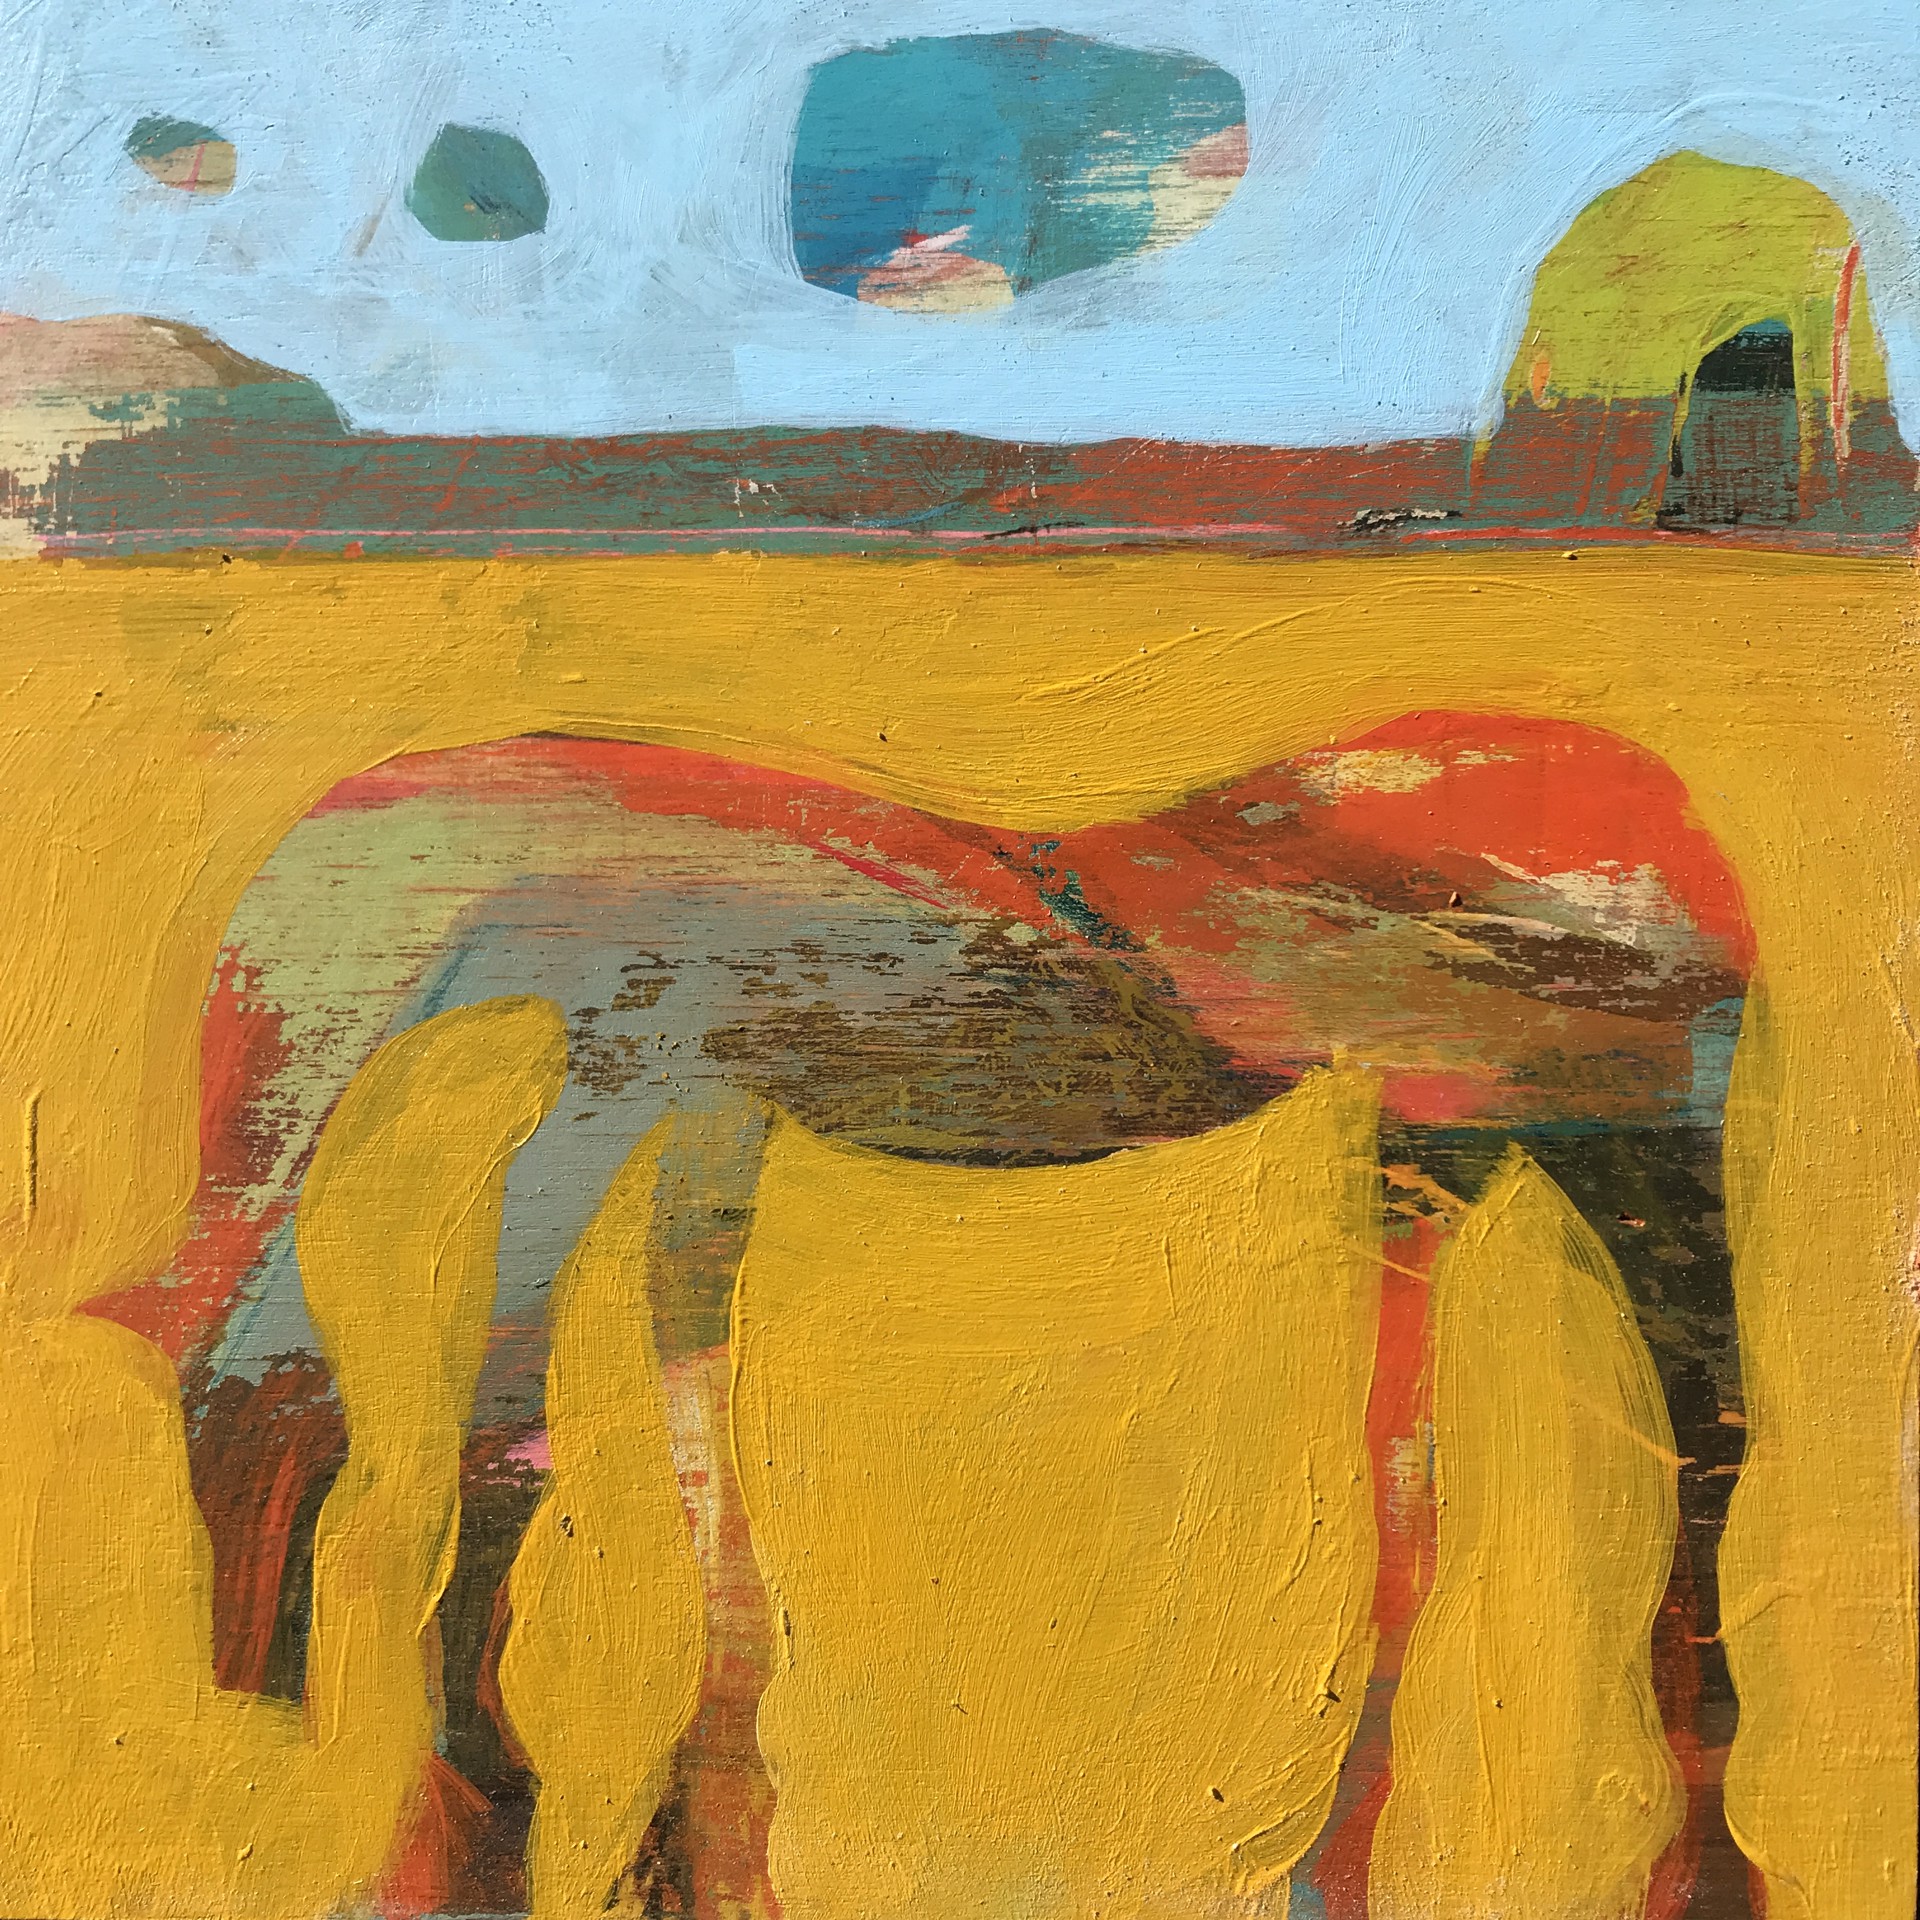 Horse in Yellow Field by Rachael Van Dyke